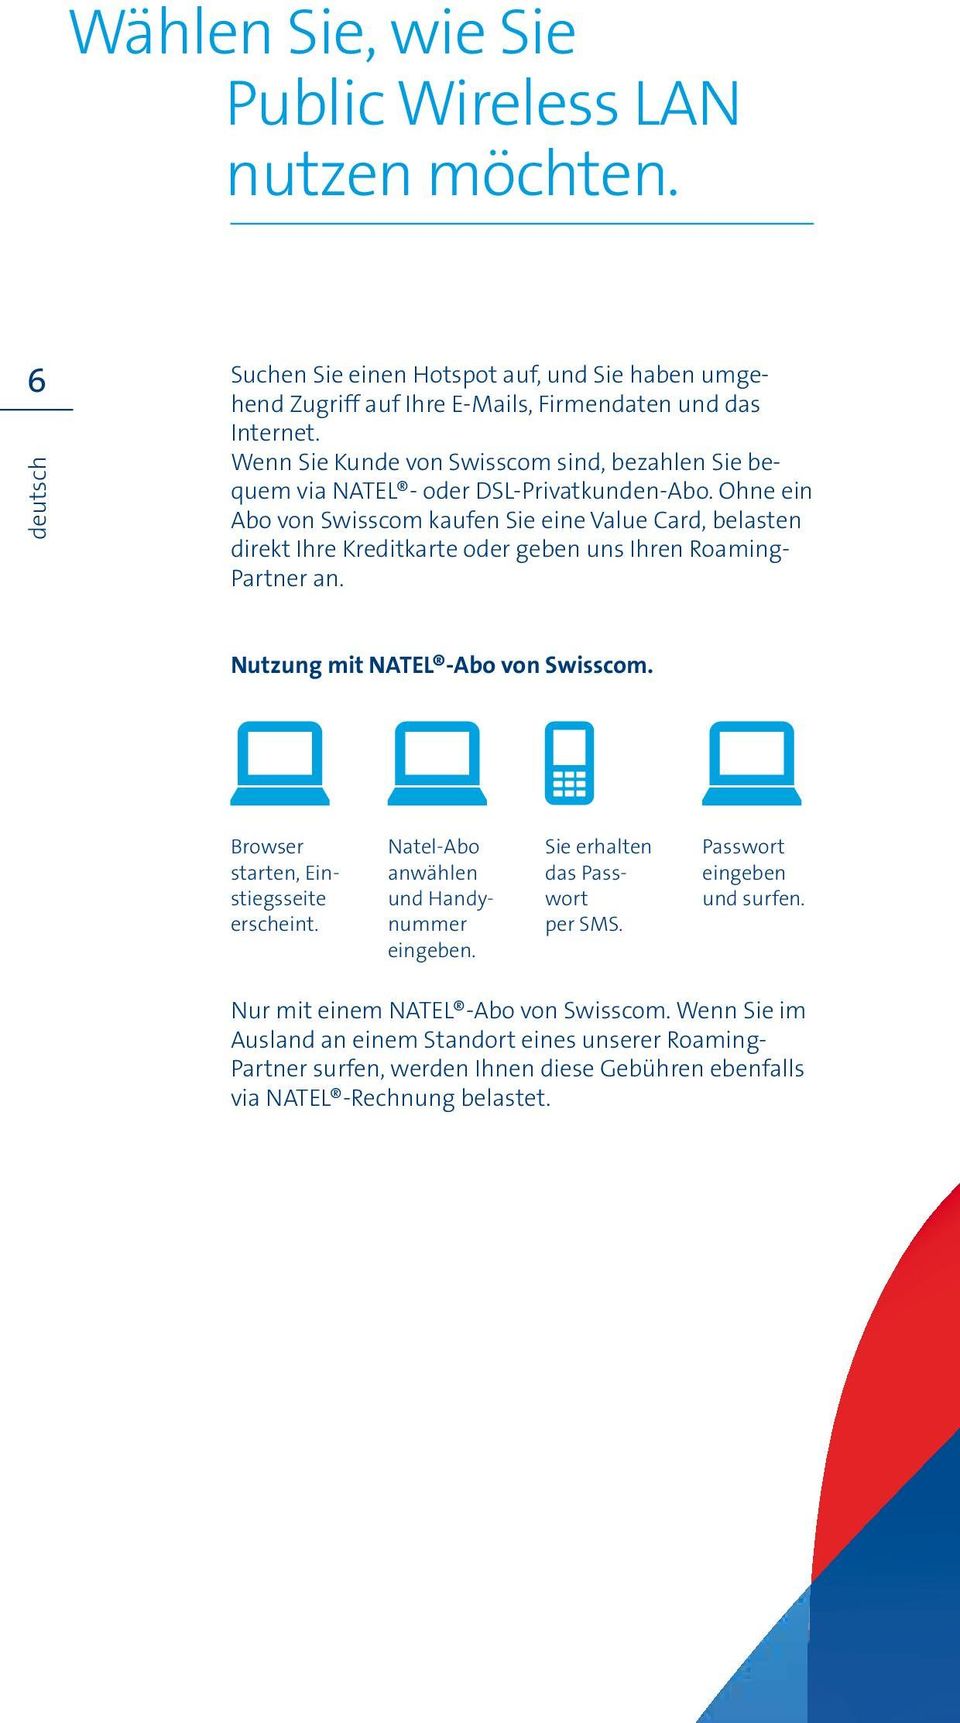 Ohne ein Abo von Swisscom kaufen Sie eine Value Card, belasten direkt Ihre Kreditkarte oder geben uns Ihren Roaming- Partner an. Nutzung mit NATEL -Abo von Swisscom.